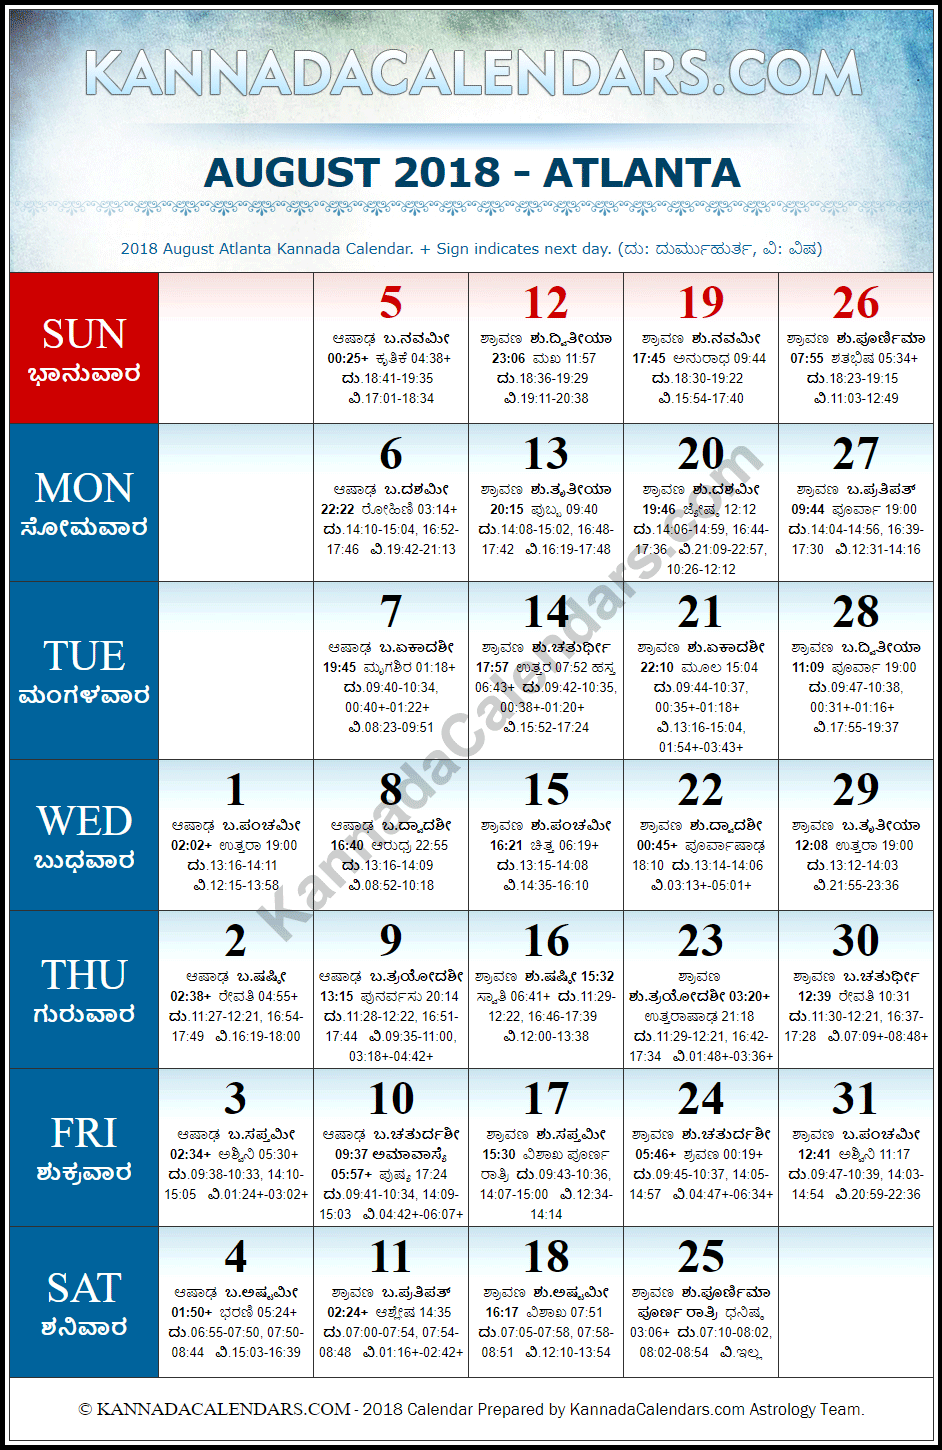 August 2018 Kannada Calendar for Atlanta, USA